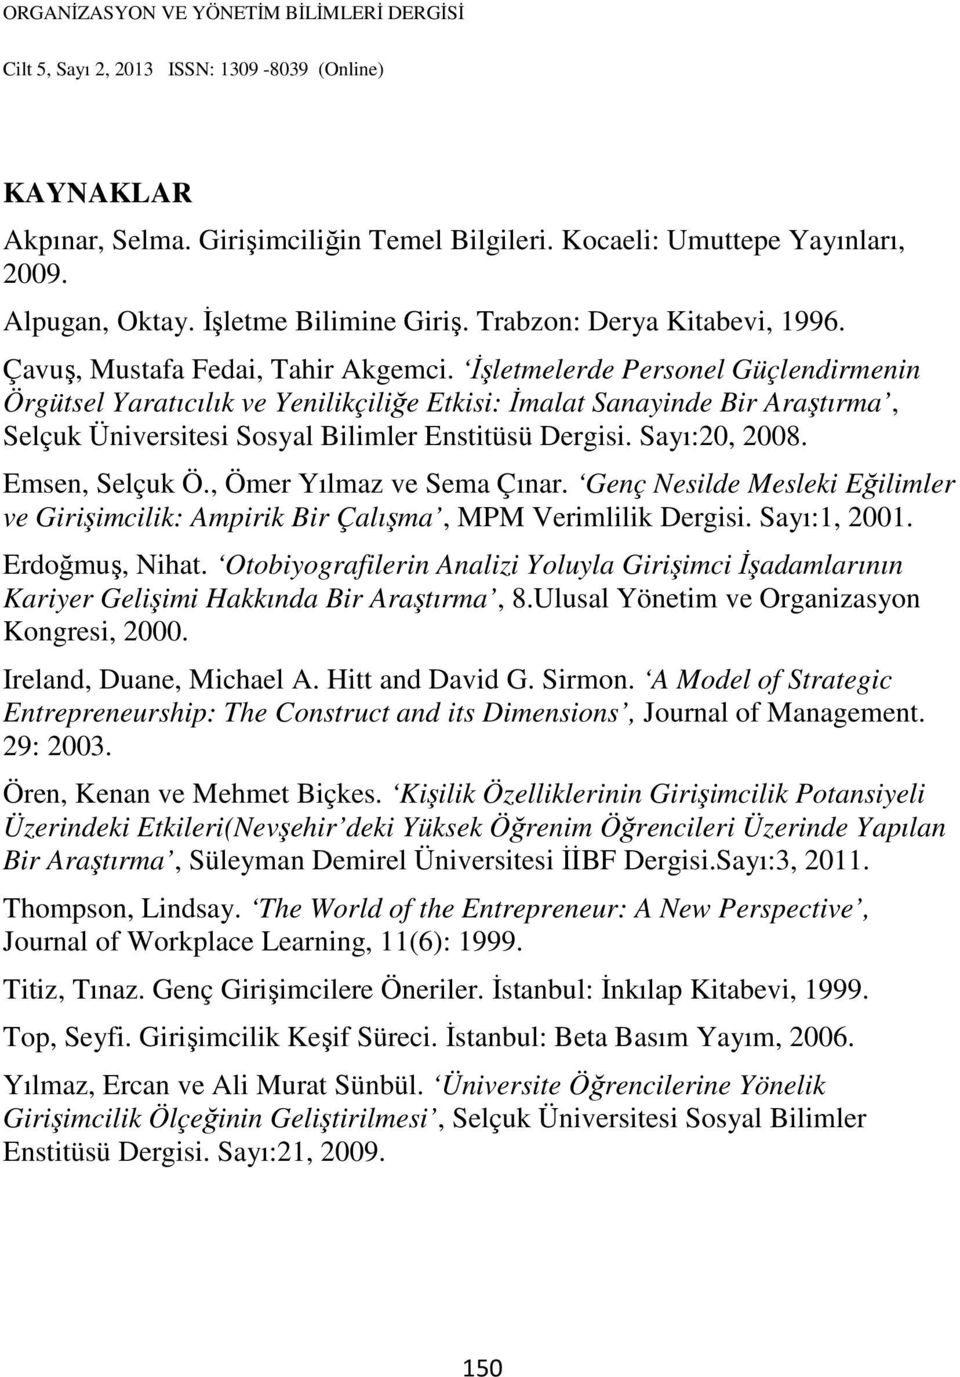 Emsen, Selçuk Ö., Ömer Yılmaz ve Sema Çınar. Genç Nesilde Mesleki Eğilimler ve Girişimcilik: Ampirik Bir Çalışma, MPM Verimlilik Dergisi. Sayı:1, 2001. Erdoğmuş, Nihat.